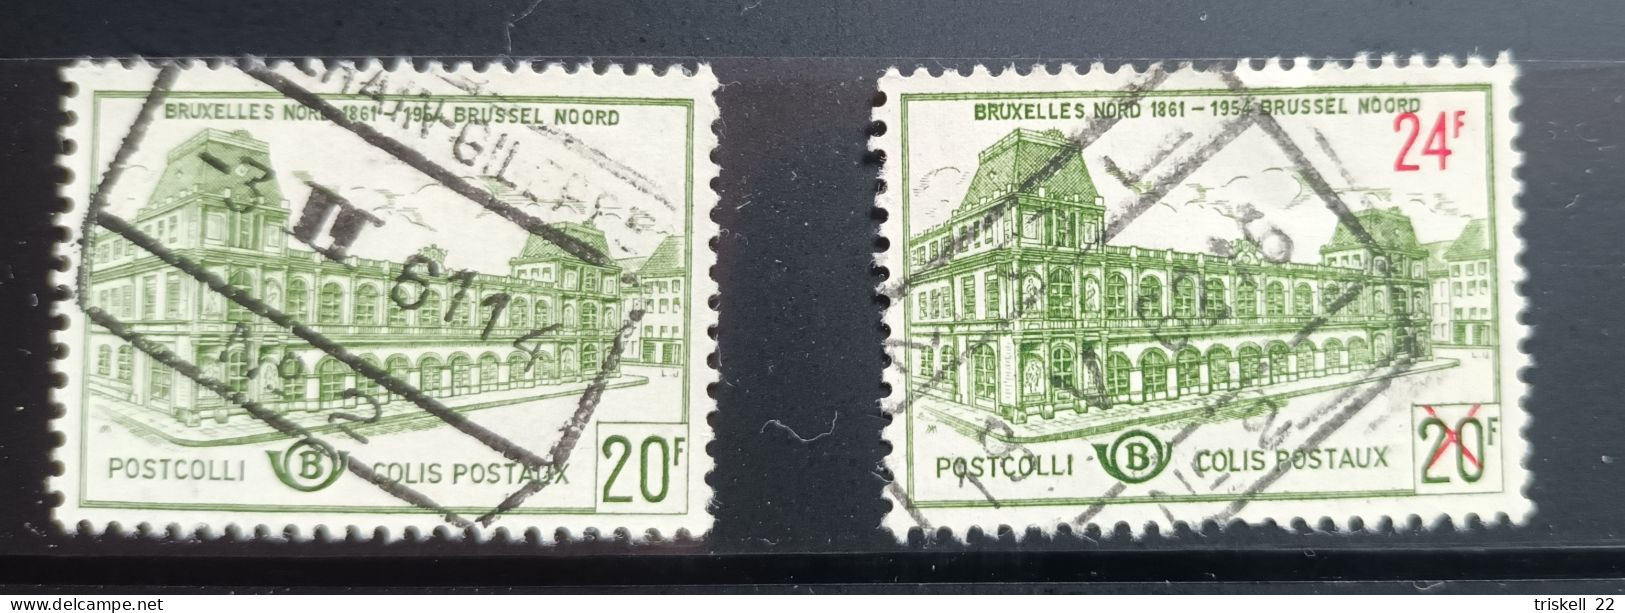 2 Timbres Colis Postaux Bruxelles Nord 1861-1954 - Oblitérés